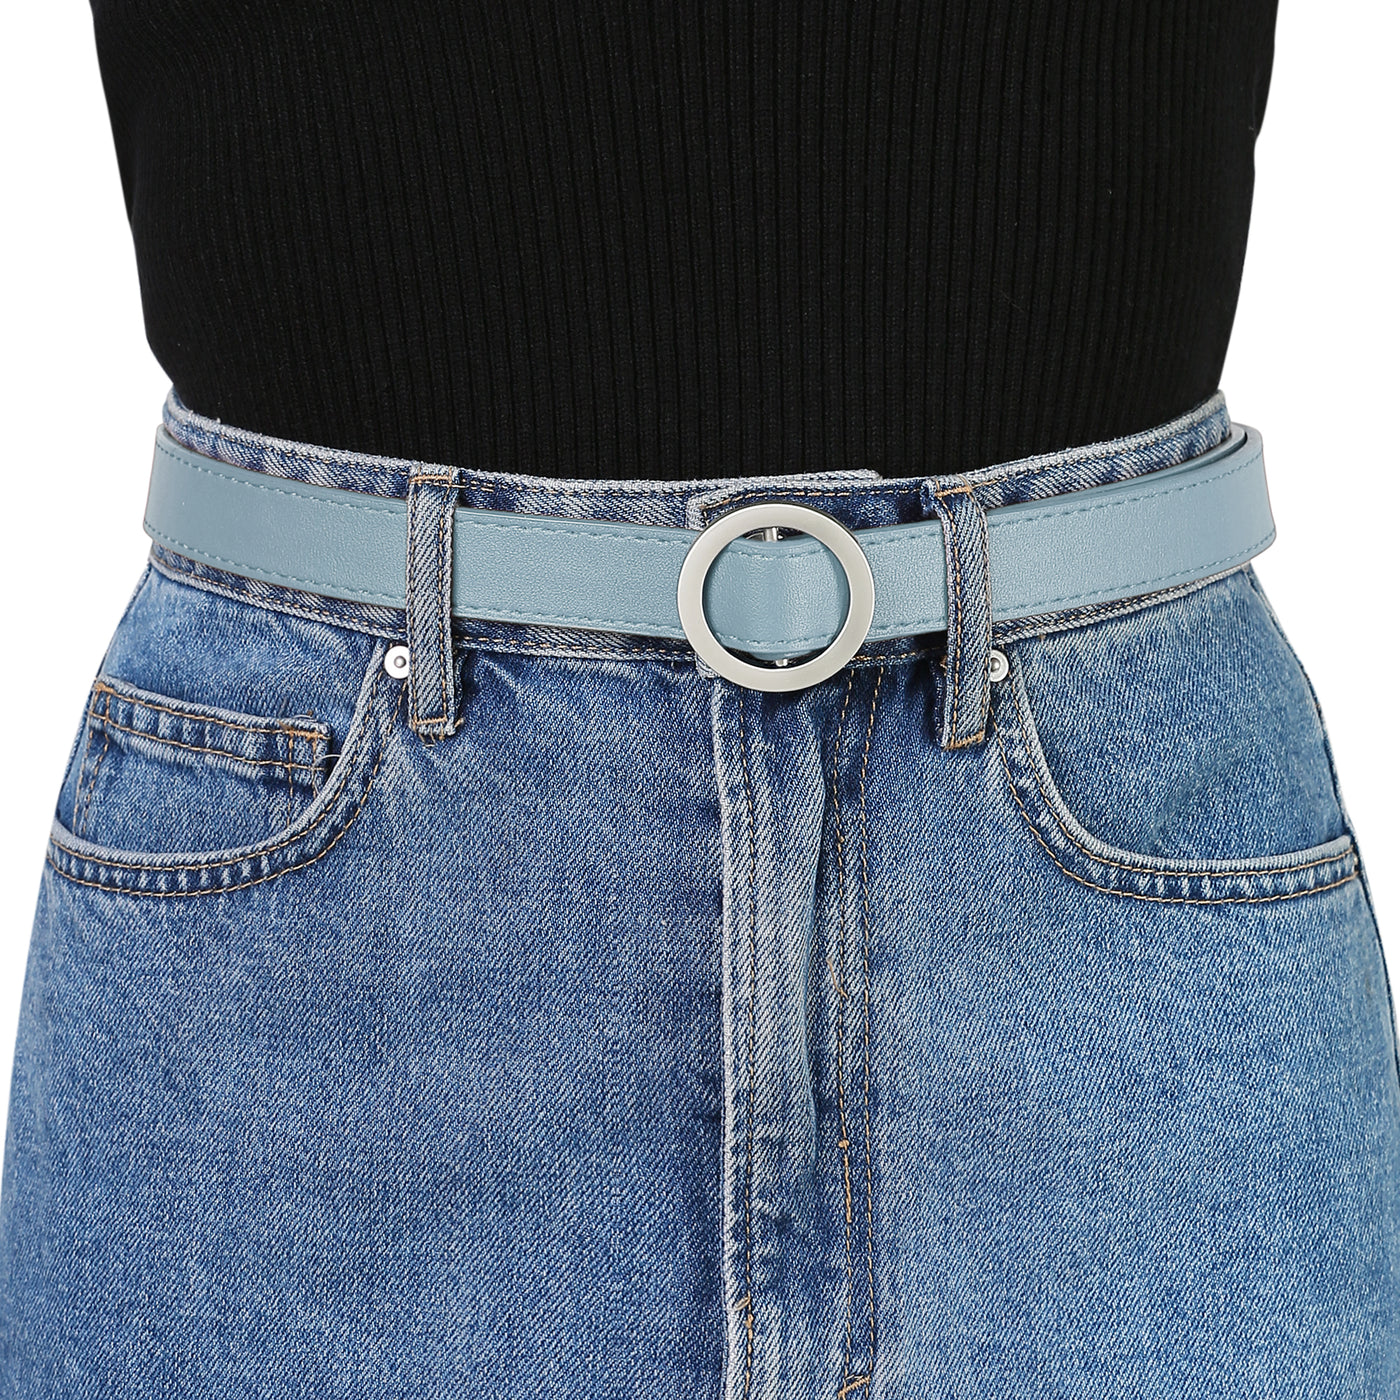 Allegra K O Ring Metal Buckle Thin Nonporous Jeans Dress Waist Belt